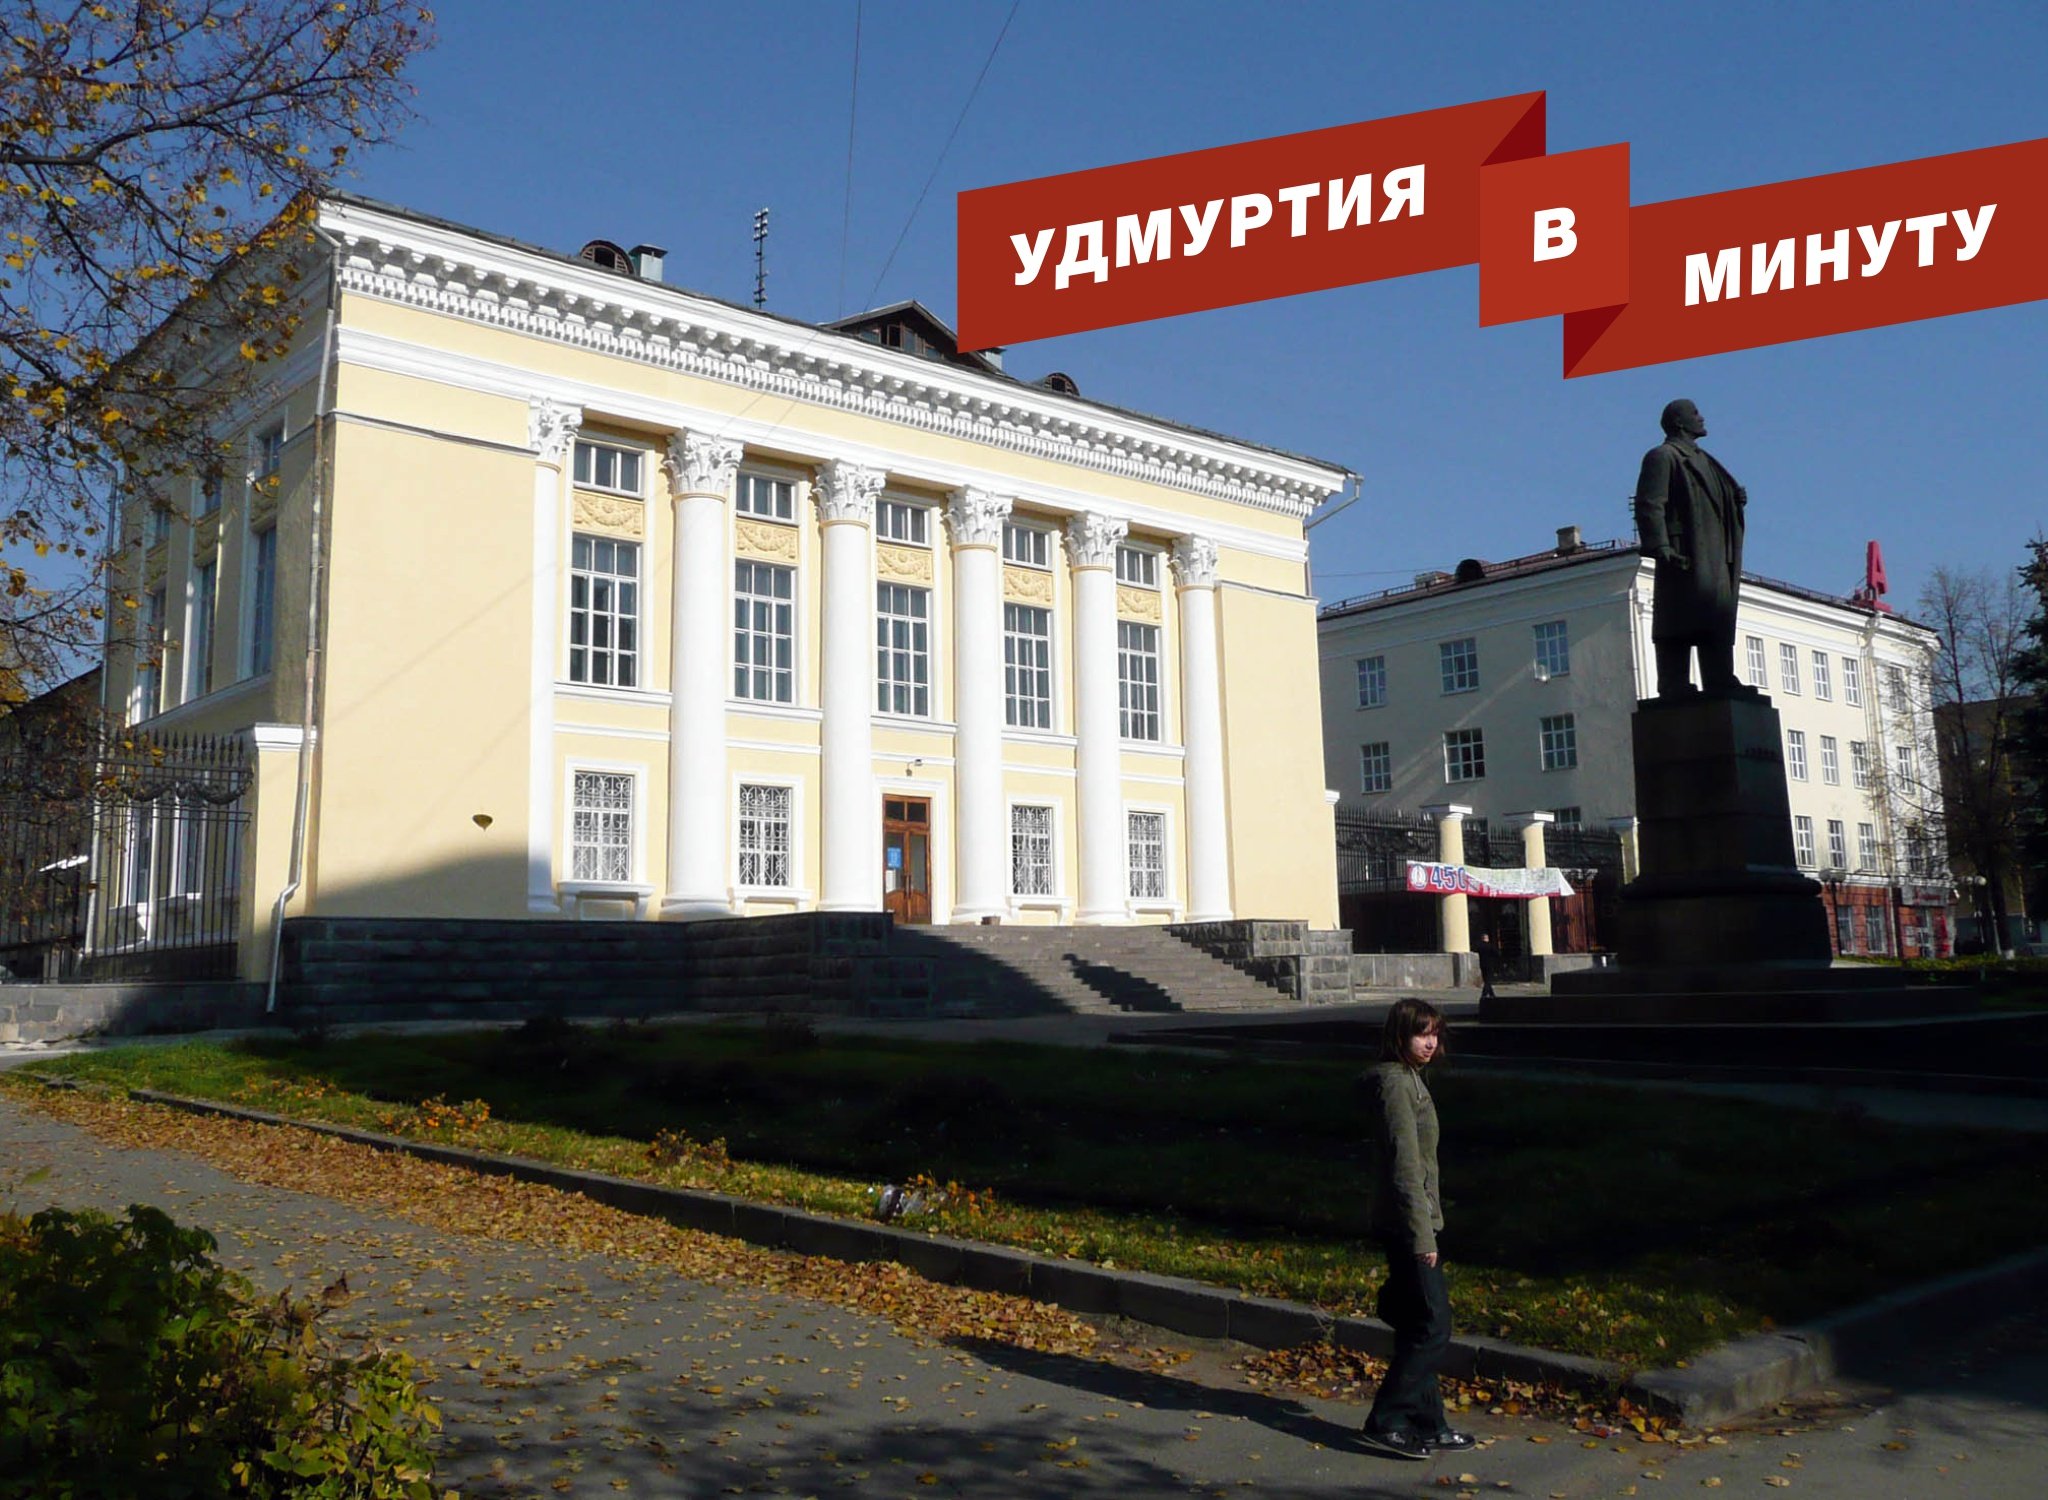 Удмуртия в минуту: ремонт Нацбиблиотеки в Ижевске и новый гендиректор «Ижавто»